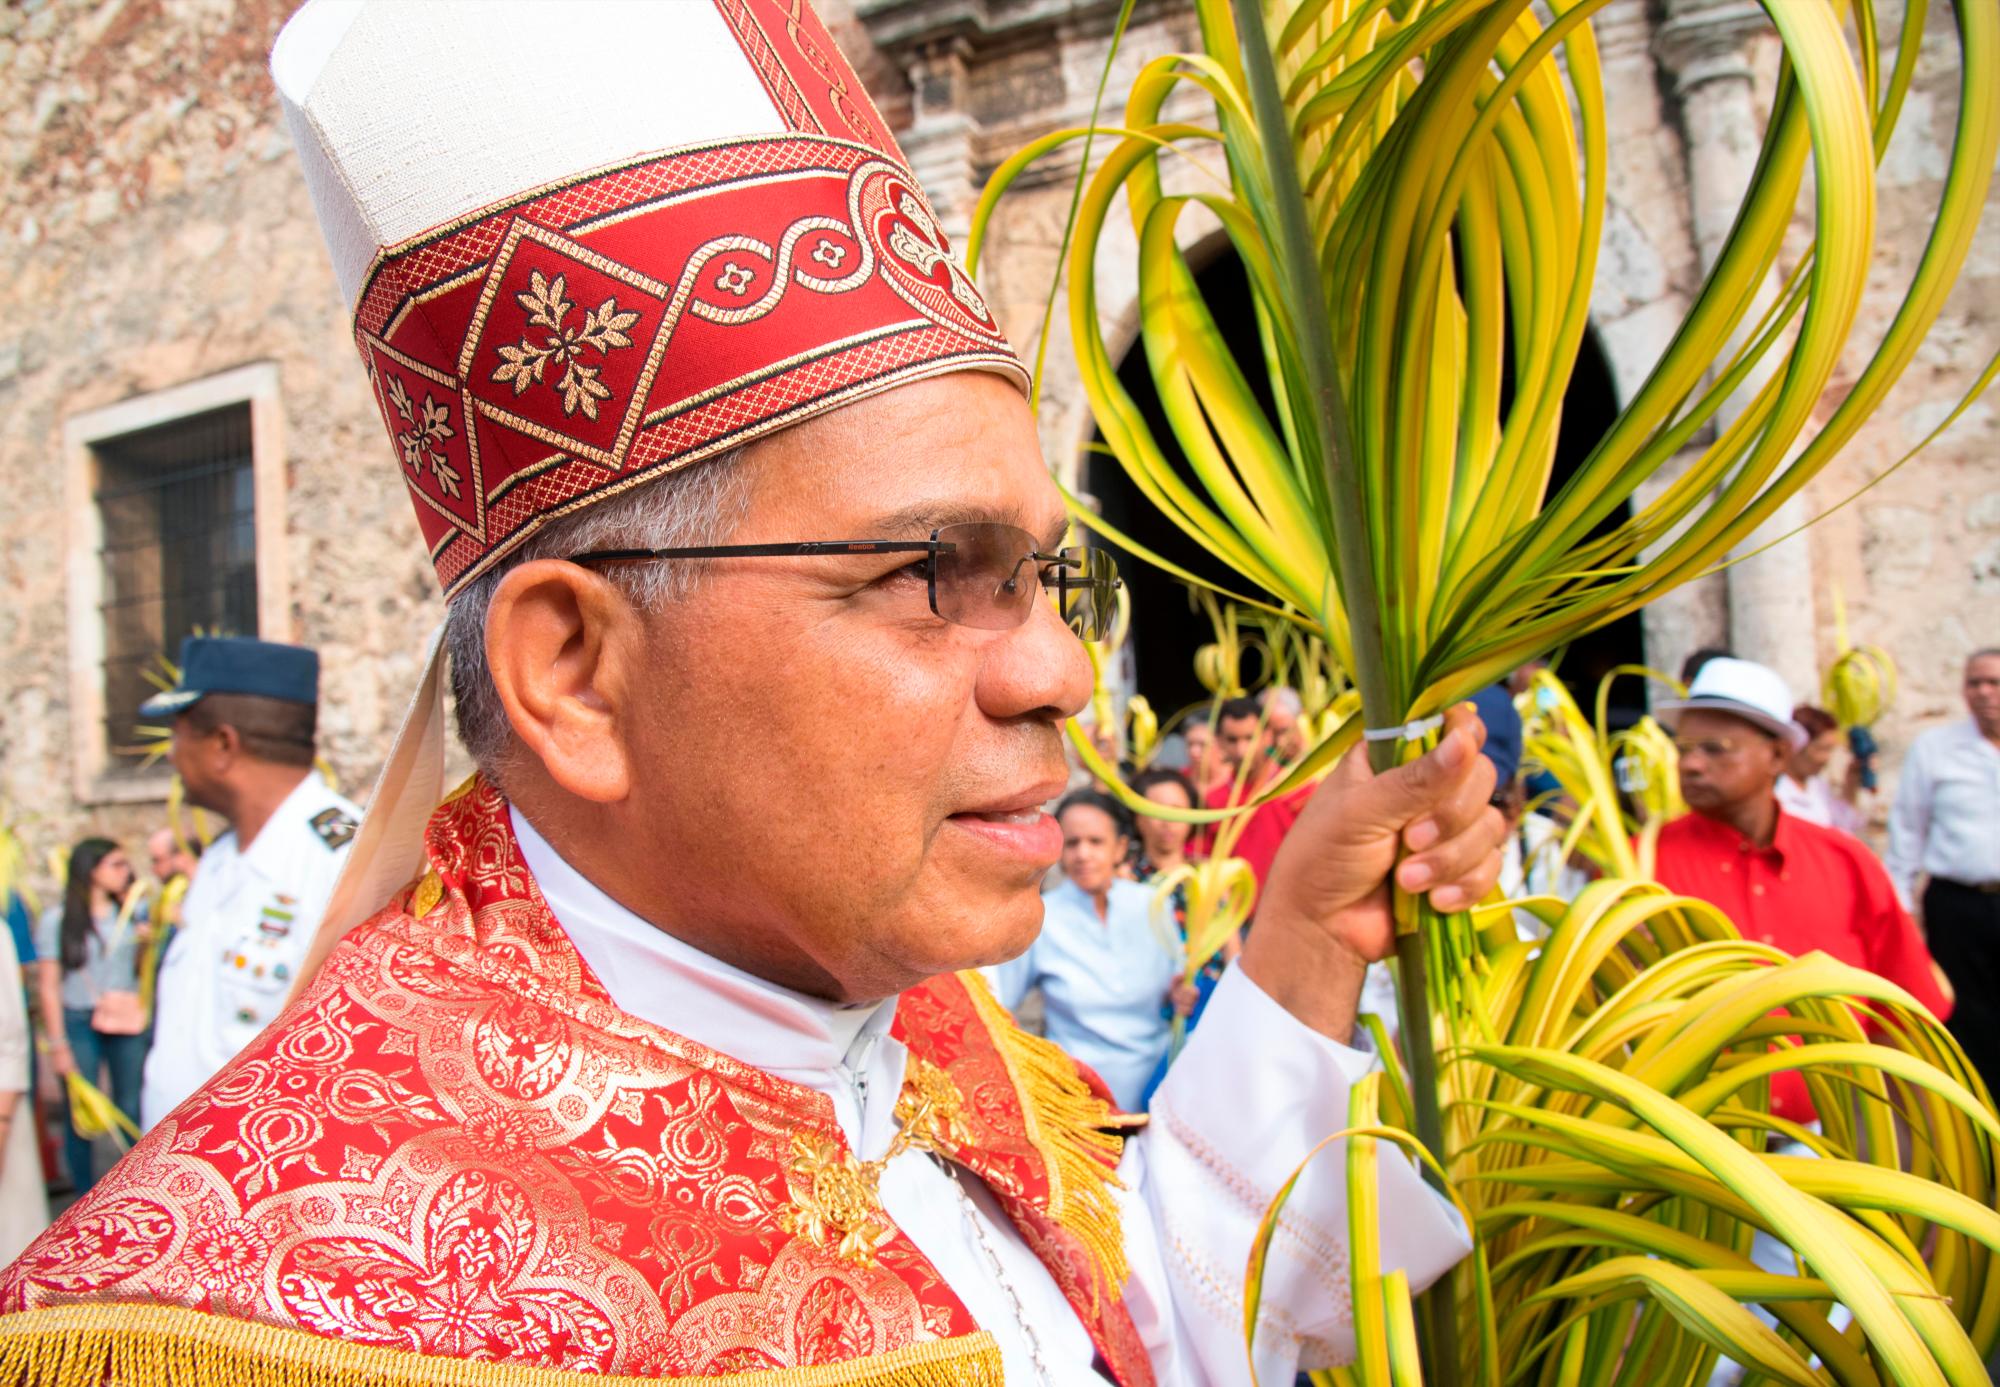 El arzobispo metropolitano de Santo Domingo, monseñor Francisco Ozoria participa en la procesión de Domingo de Ramos en la zona colonial de la ciudad de Santo Domingo, República Dominicana.